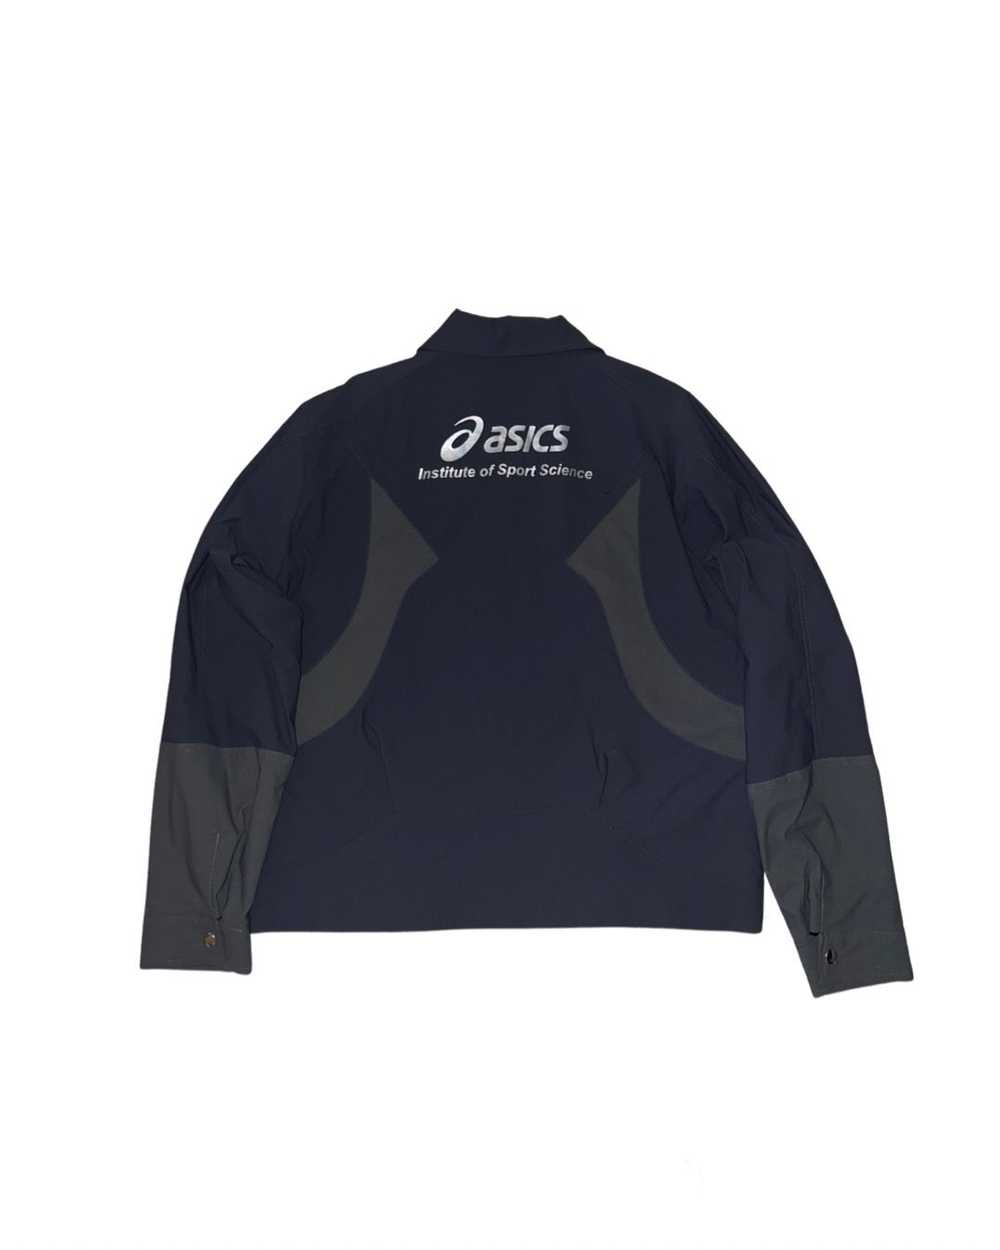 Asics Kobe uniform jacket - image 1